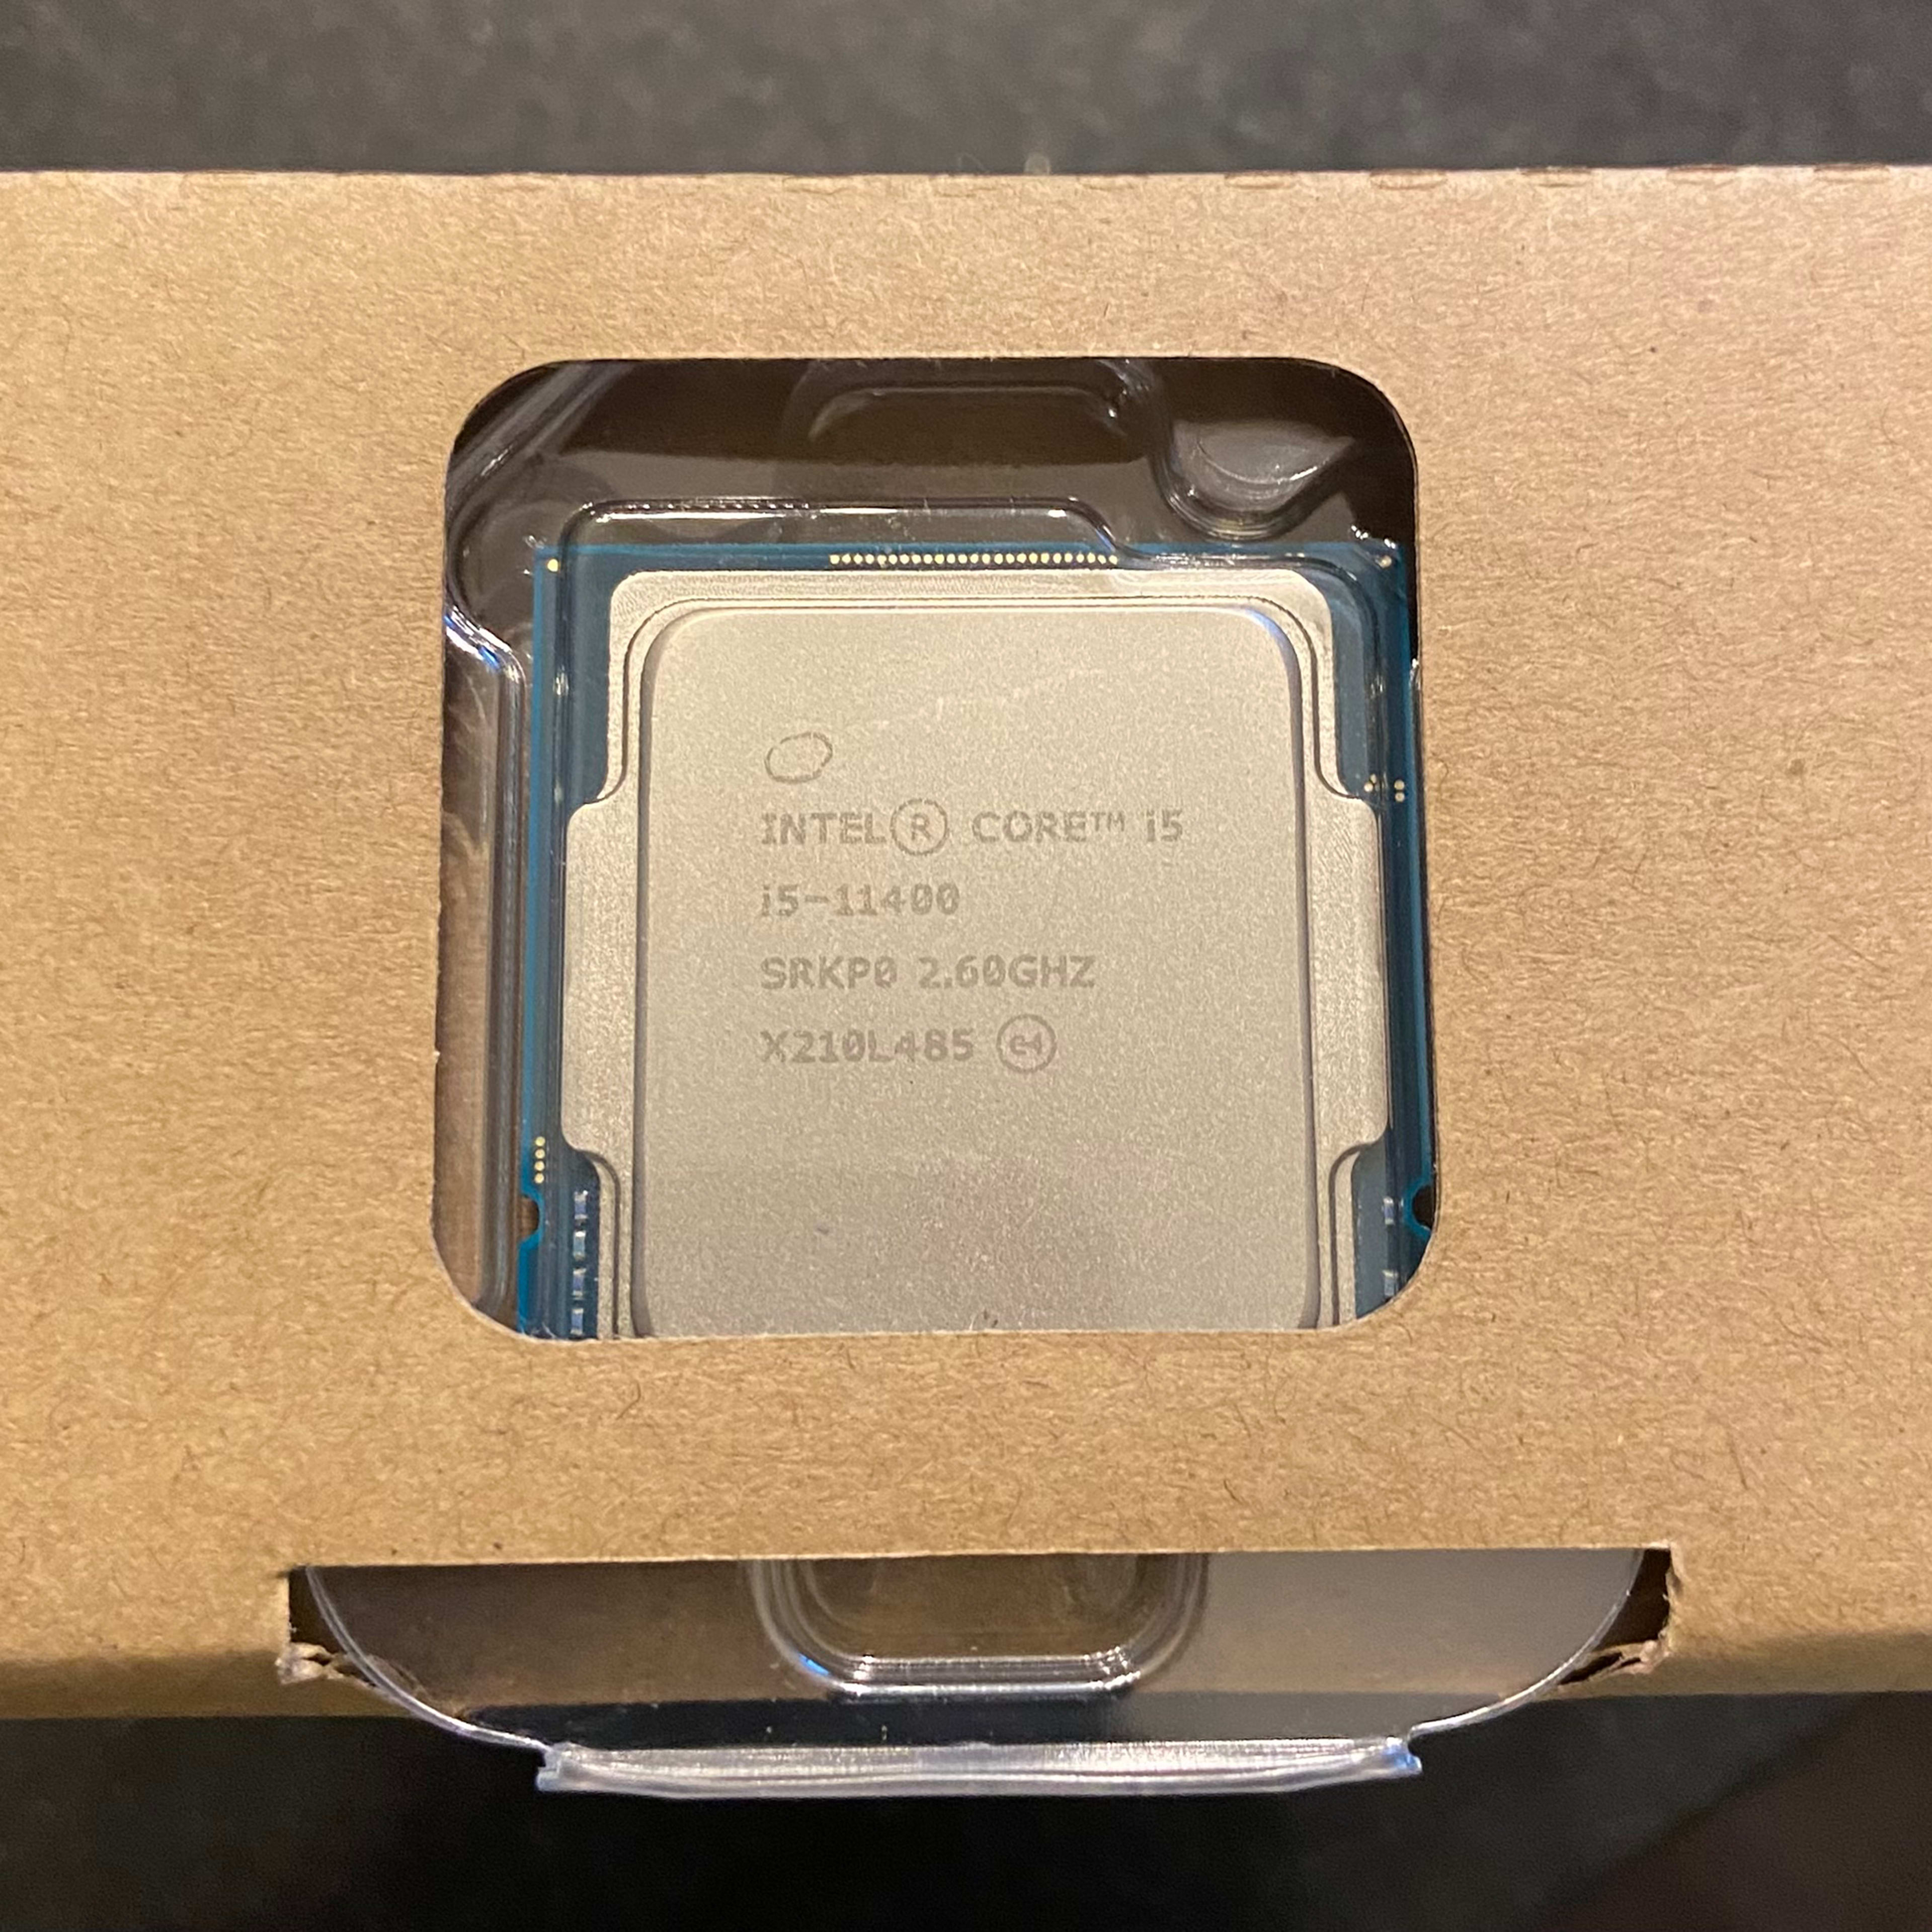 Intel Core i5-11400F Specs